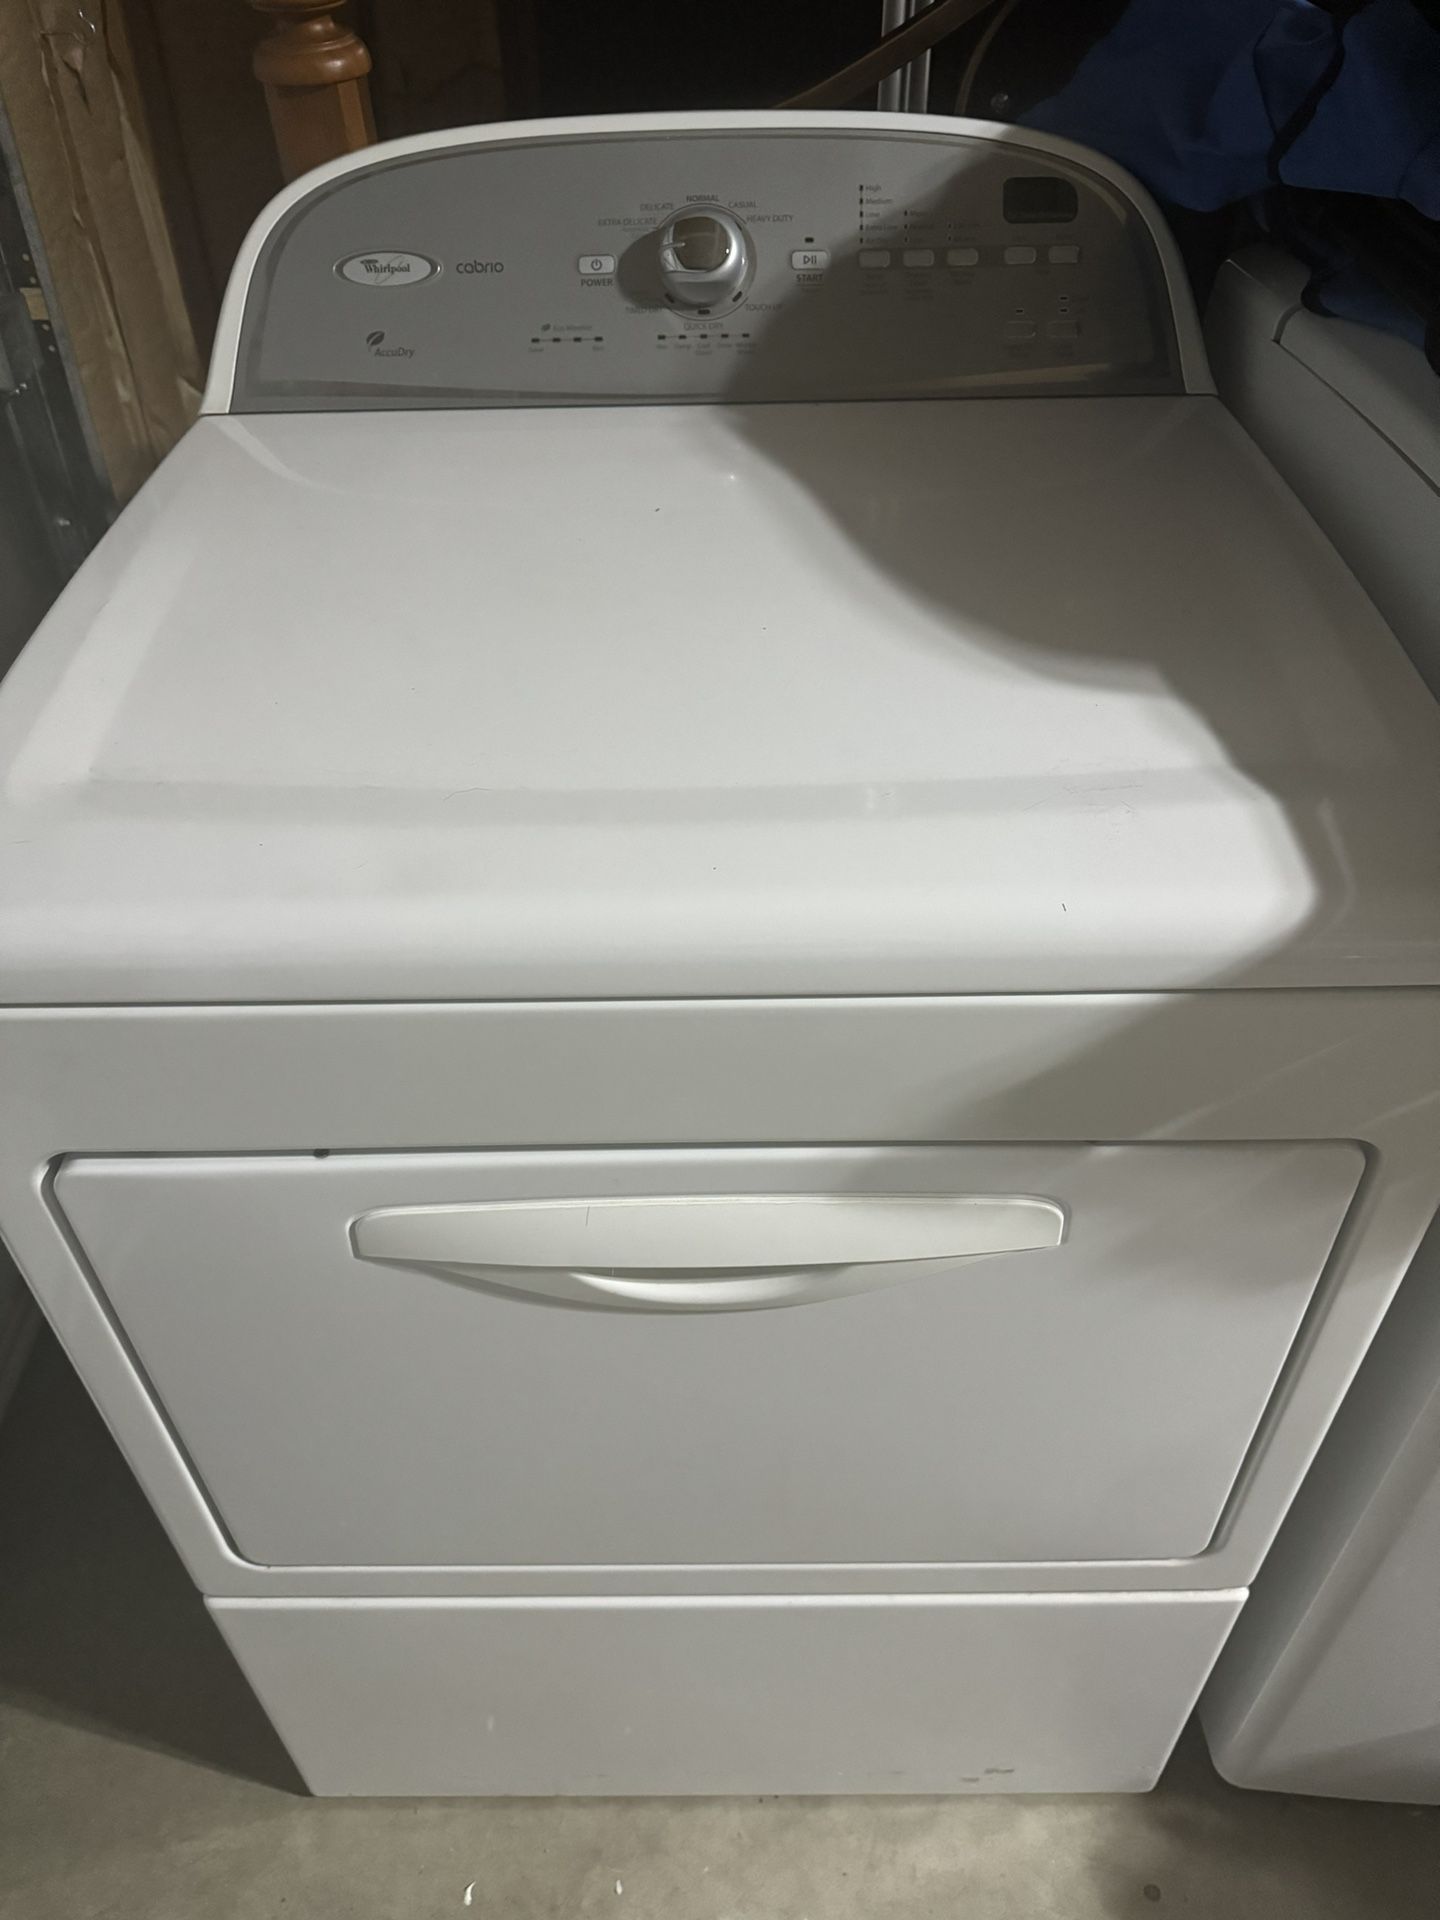 Washer /Dryer